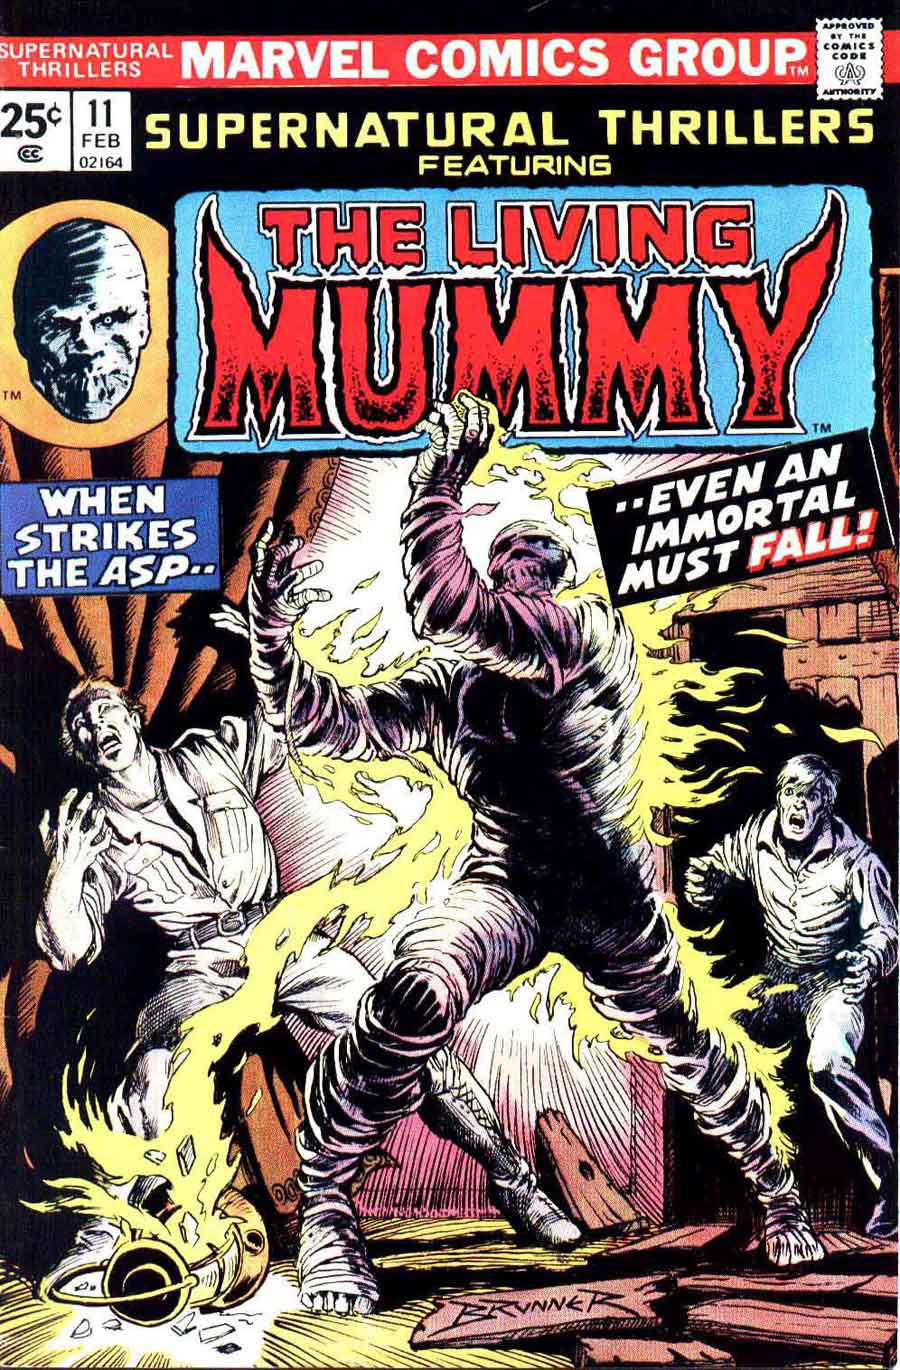 Supernatural Thrillers v1 #11 marvel 1970s bronze age comic book cover art by Frank Brunner